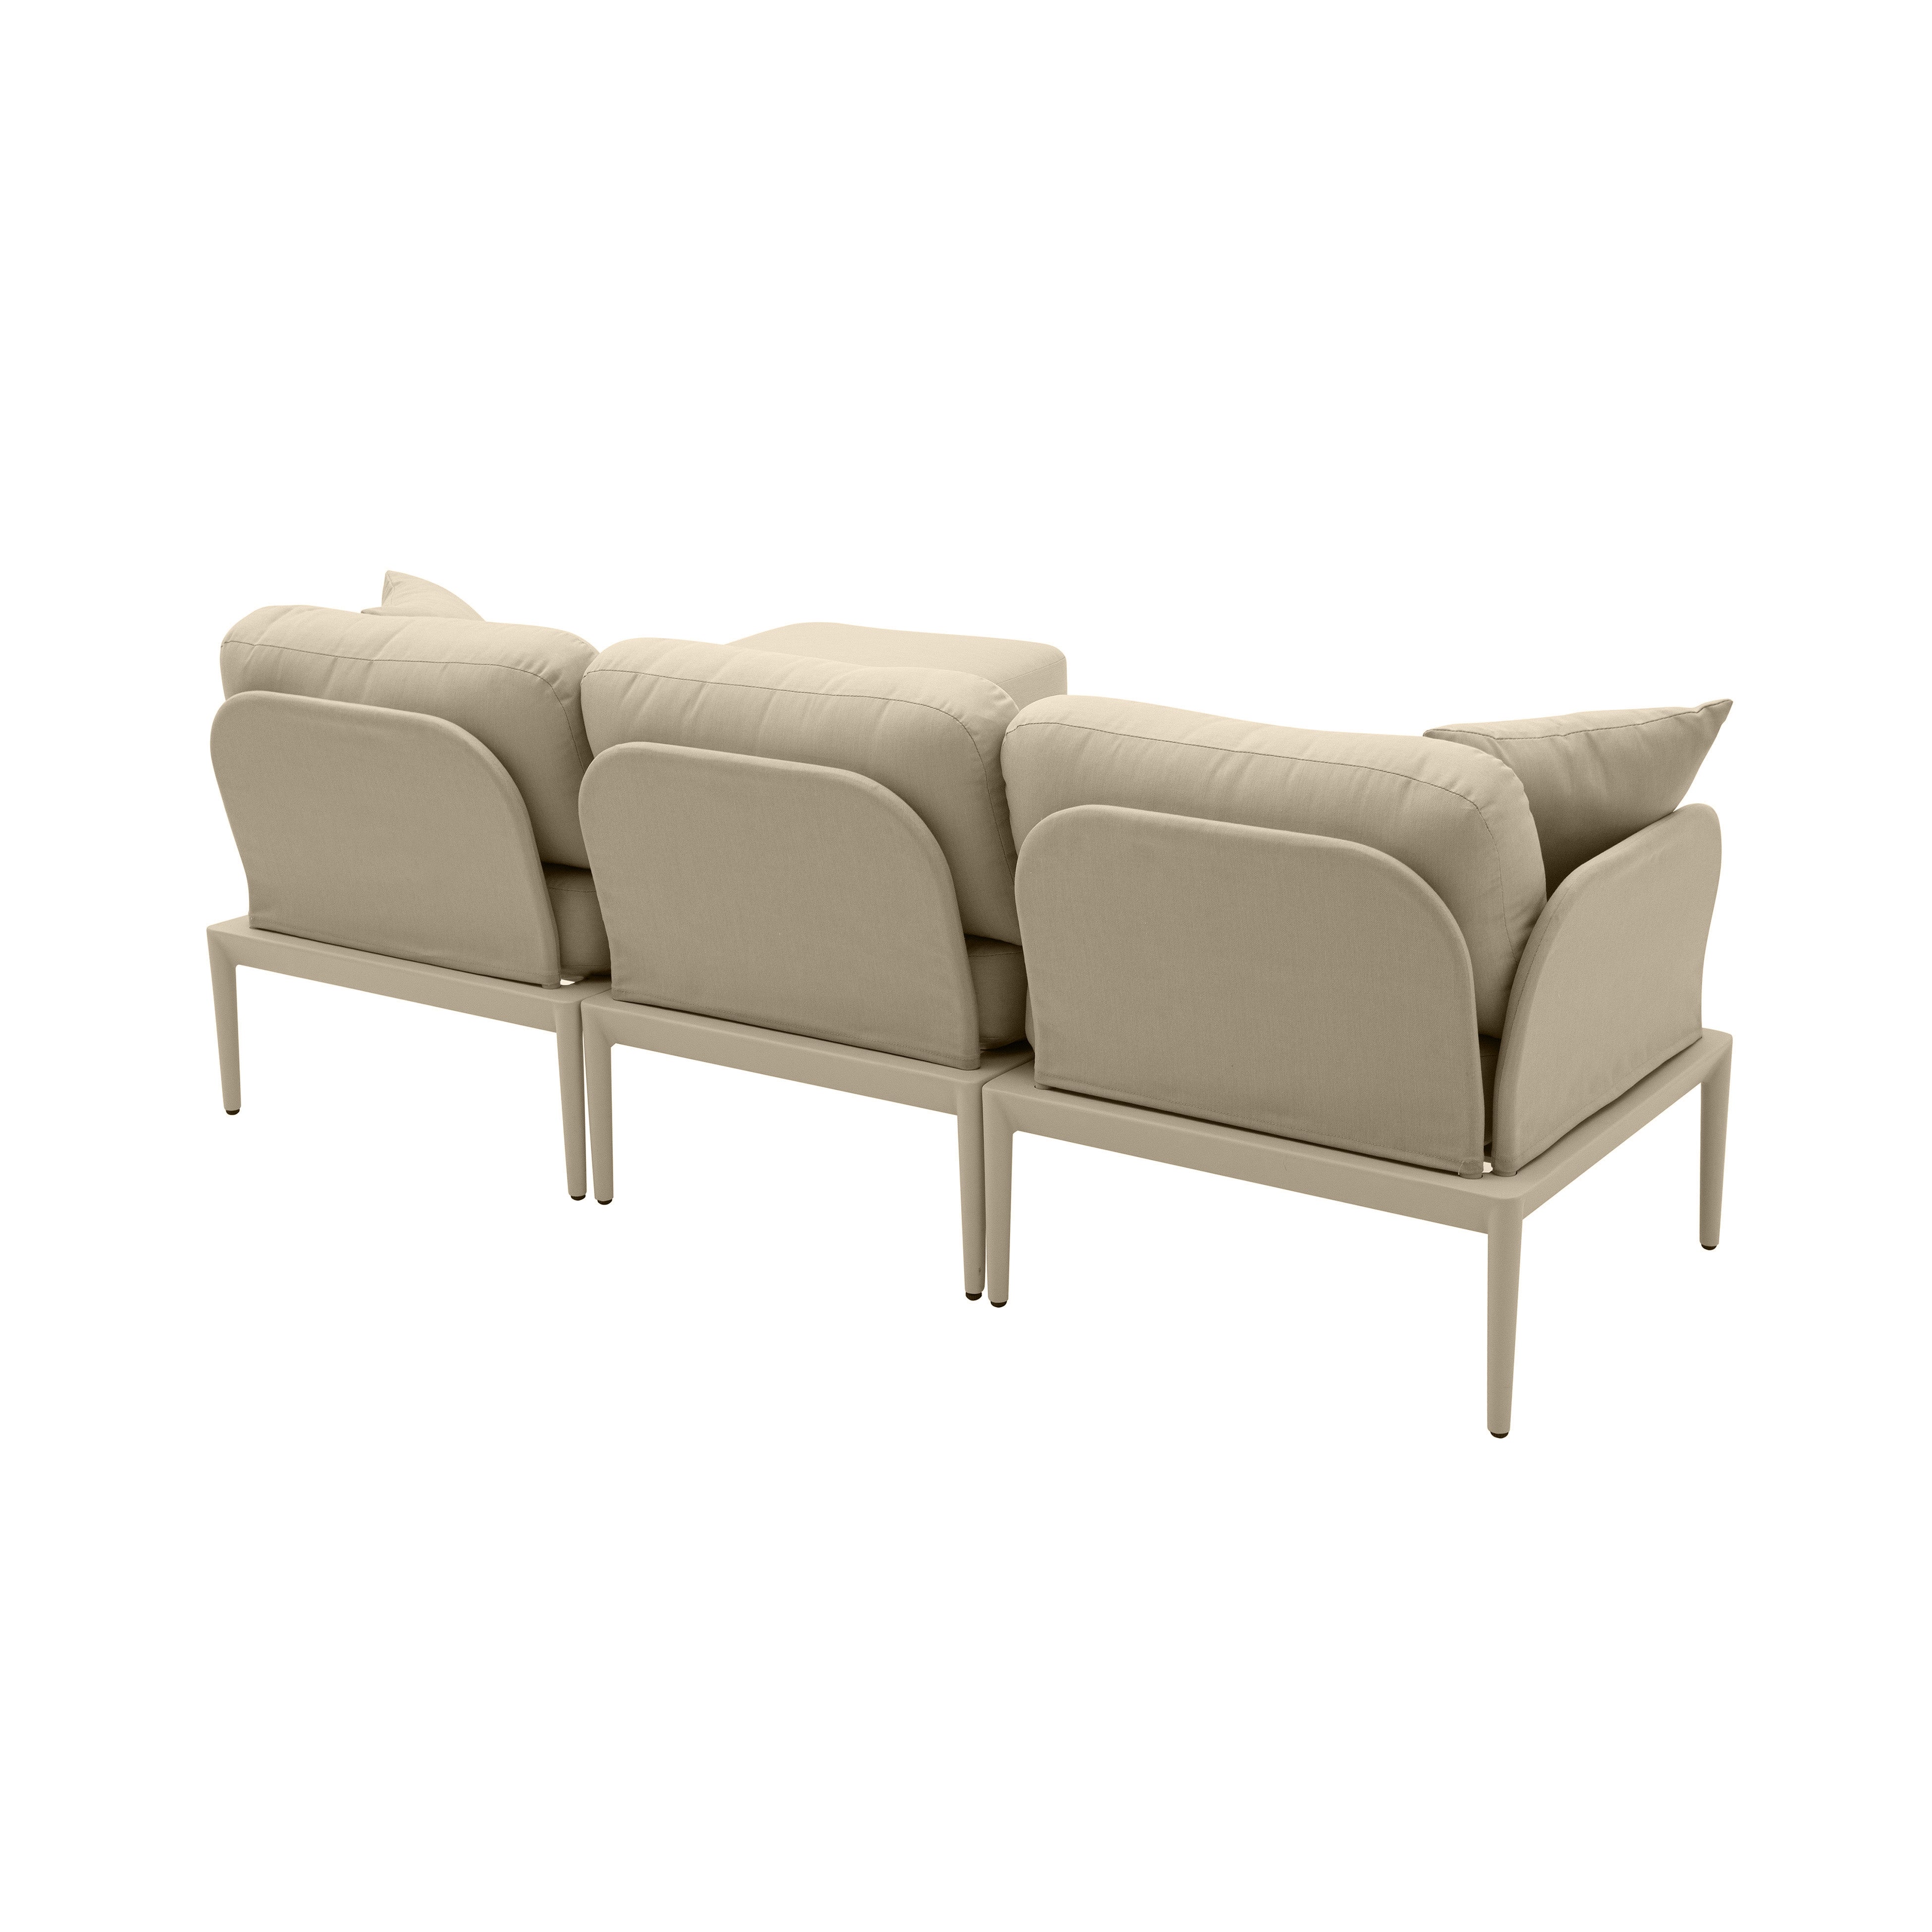 Sofá seccional de aluminio para exteriores Jade color beige de espaldas.